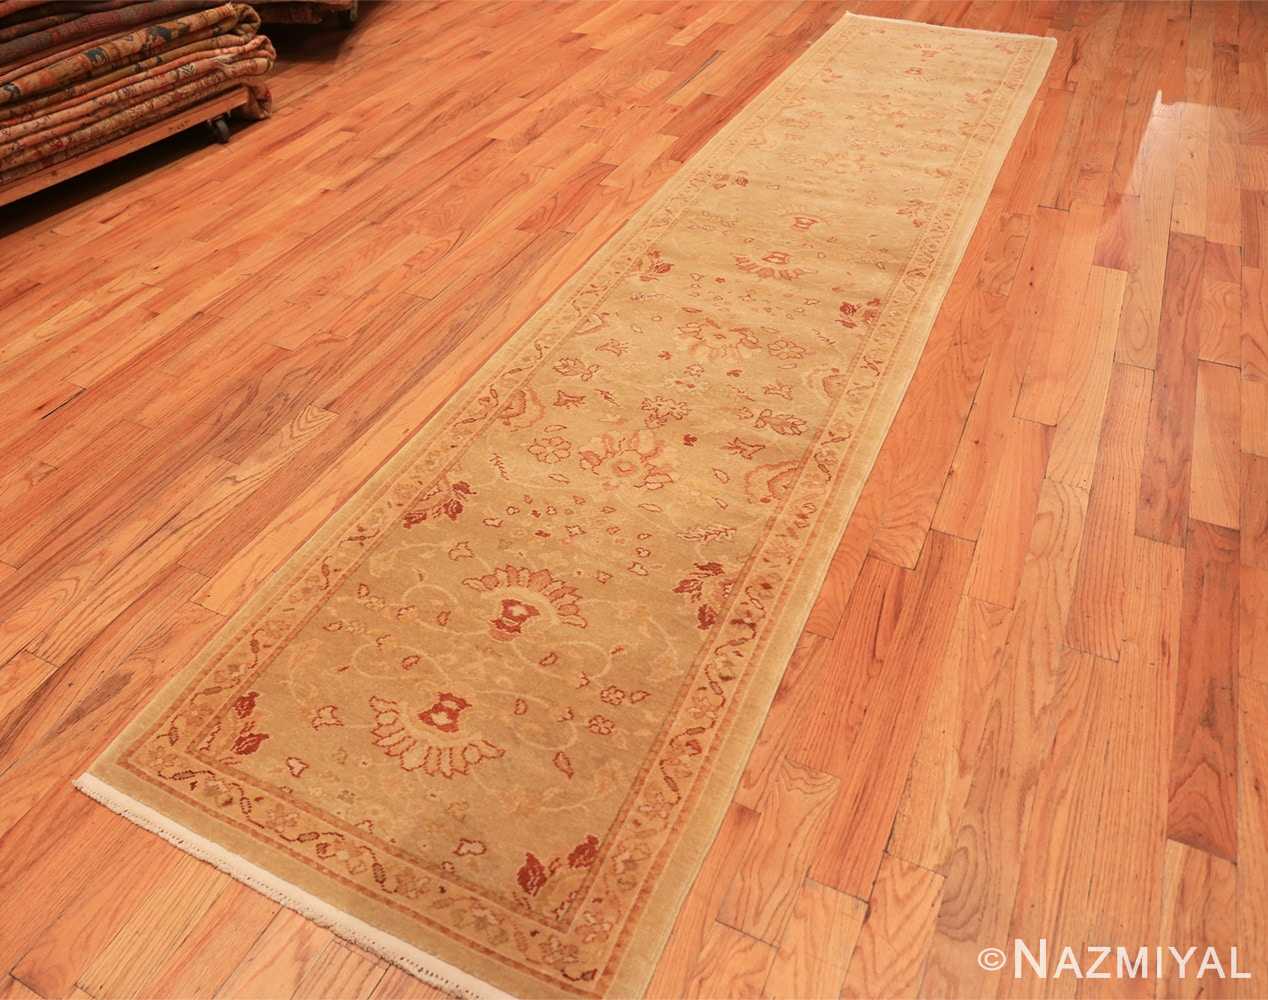 Full contemporary modern Oushak runner rug 46155 by Nazmiyal